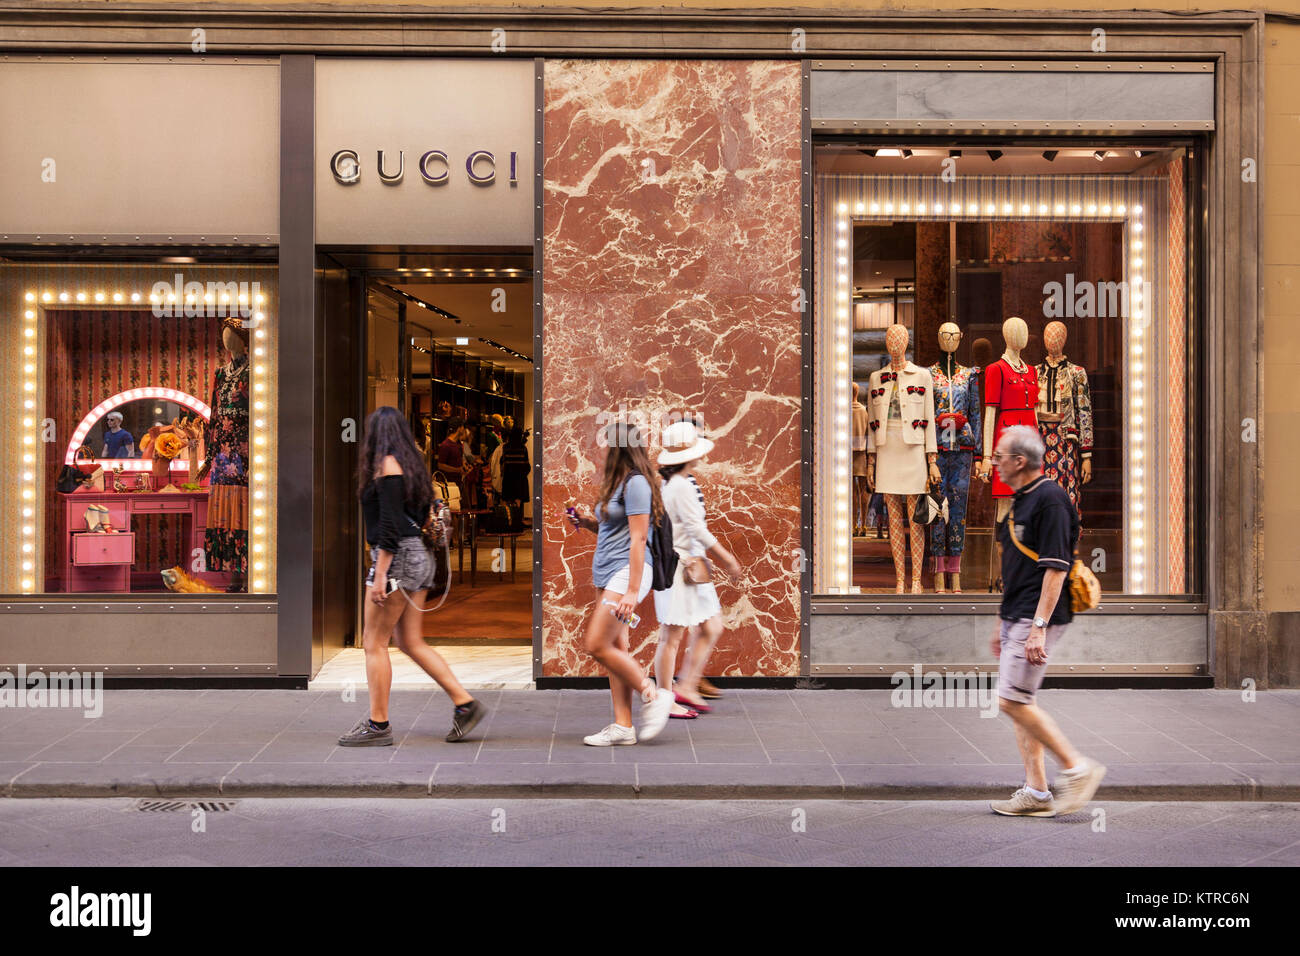 Tienda de Gucci, Florencia, Italia Fotografía de stock - Alamy